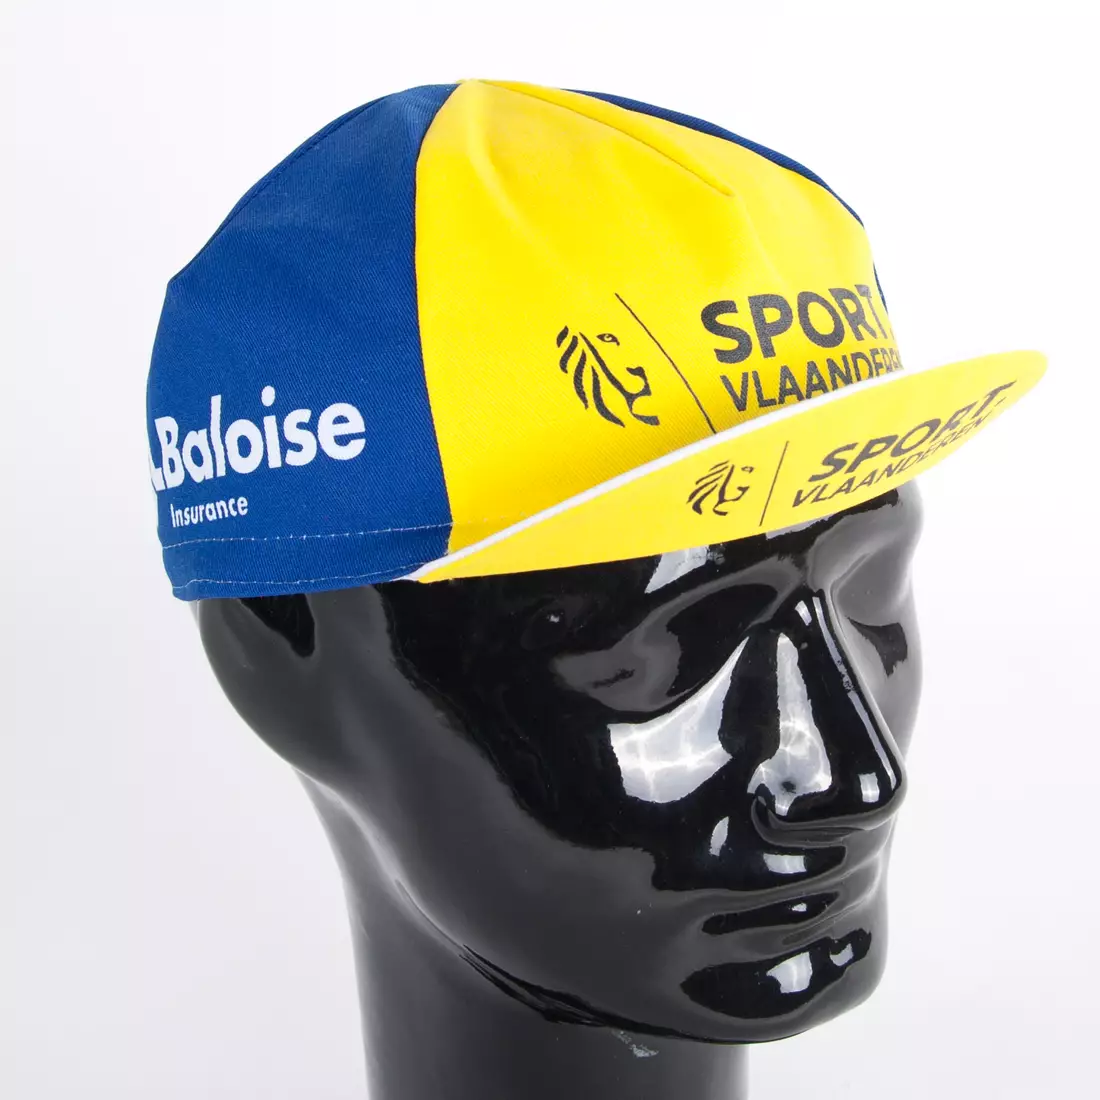 Apis Profi kerékpáros sapka SPORT vlaanderen Baloise Insurance kék sárga fehér napellenző